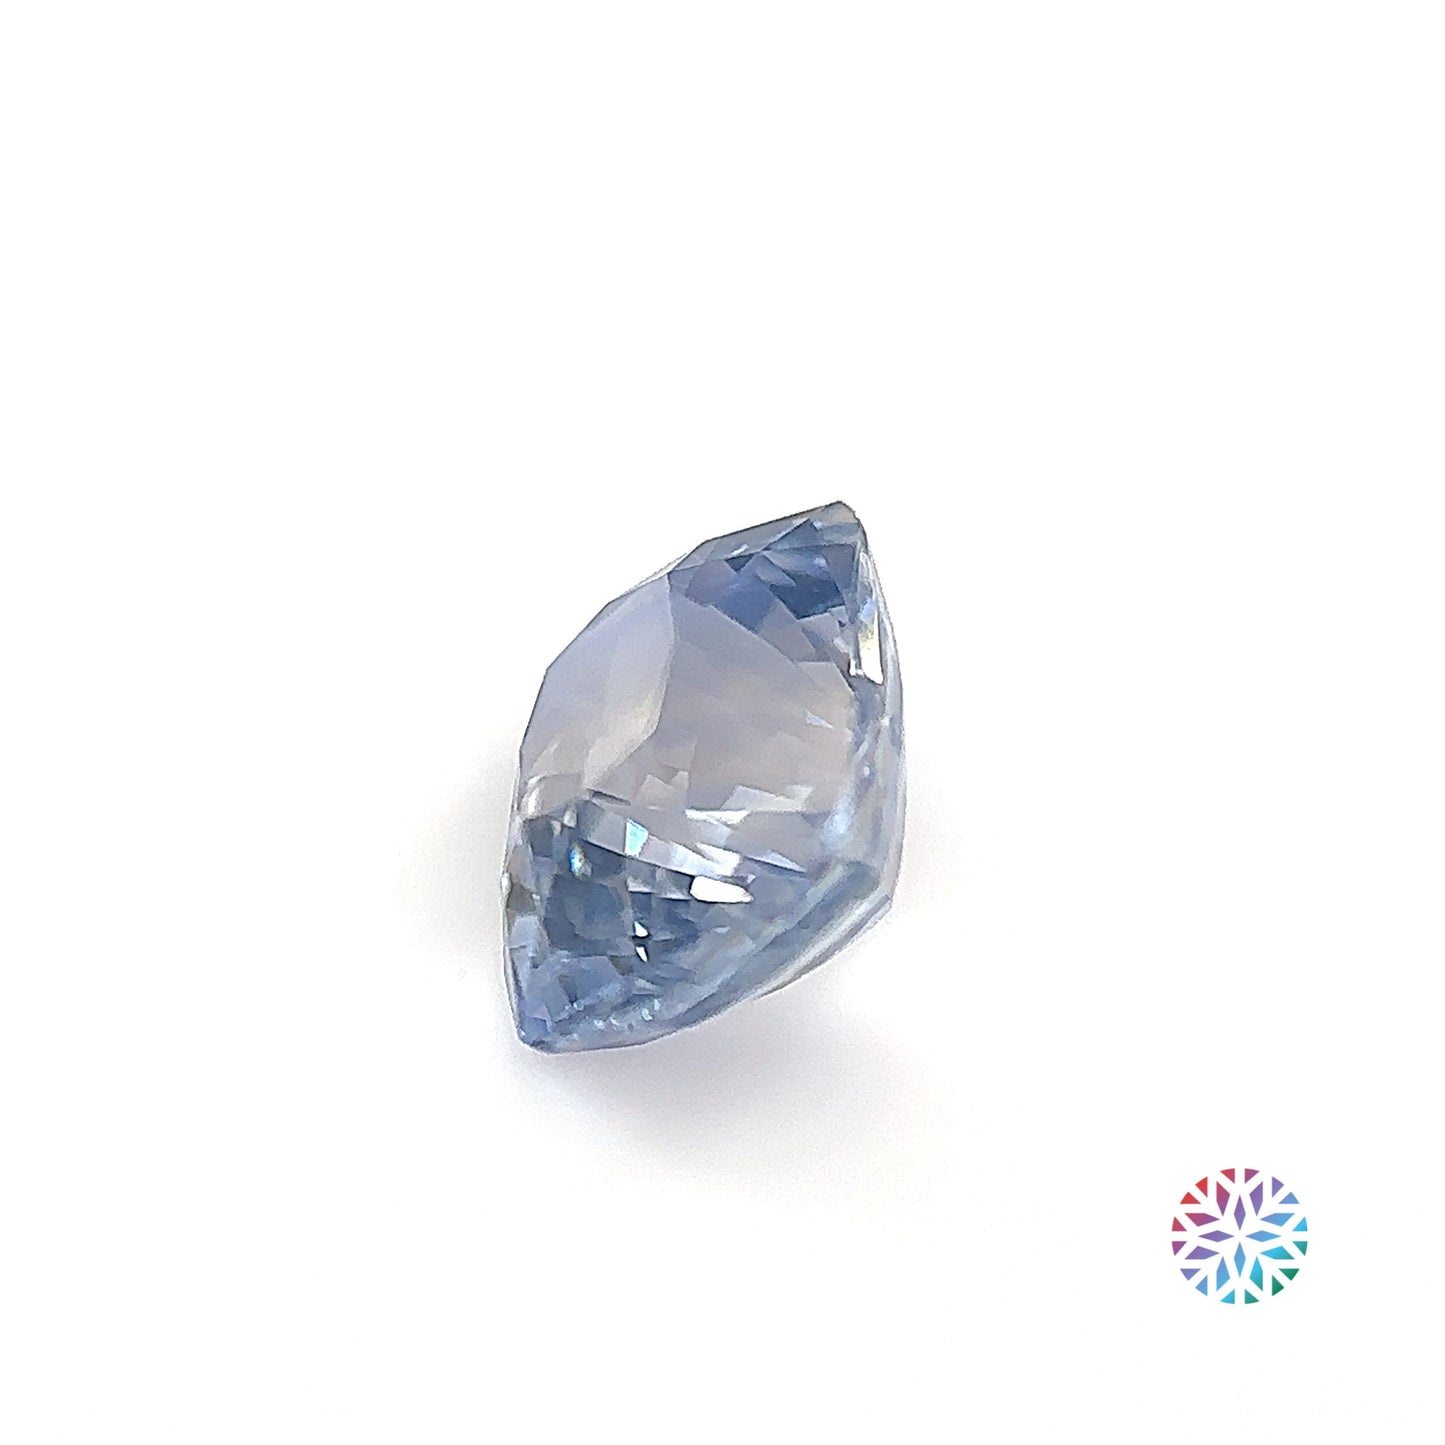 B/C Sapphire- Cushion, 3.33ct, 8.3 x 7.3 x 6.0mm